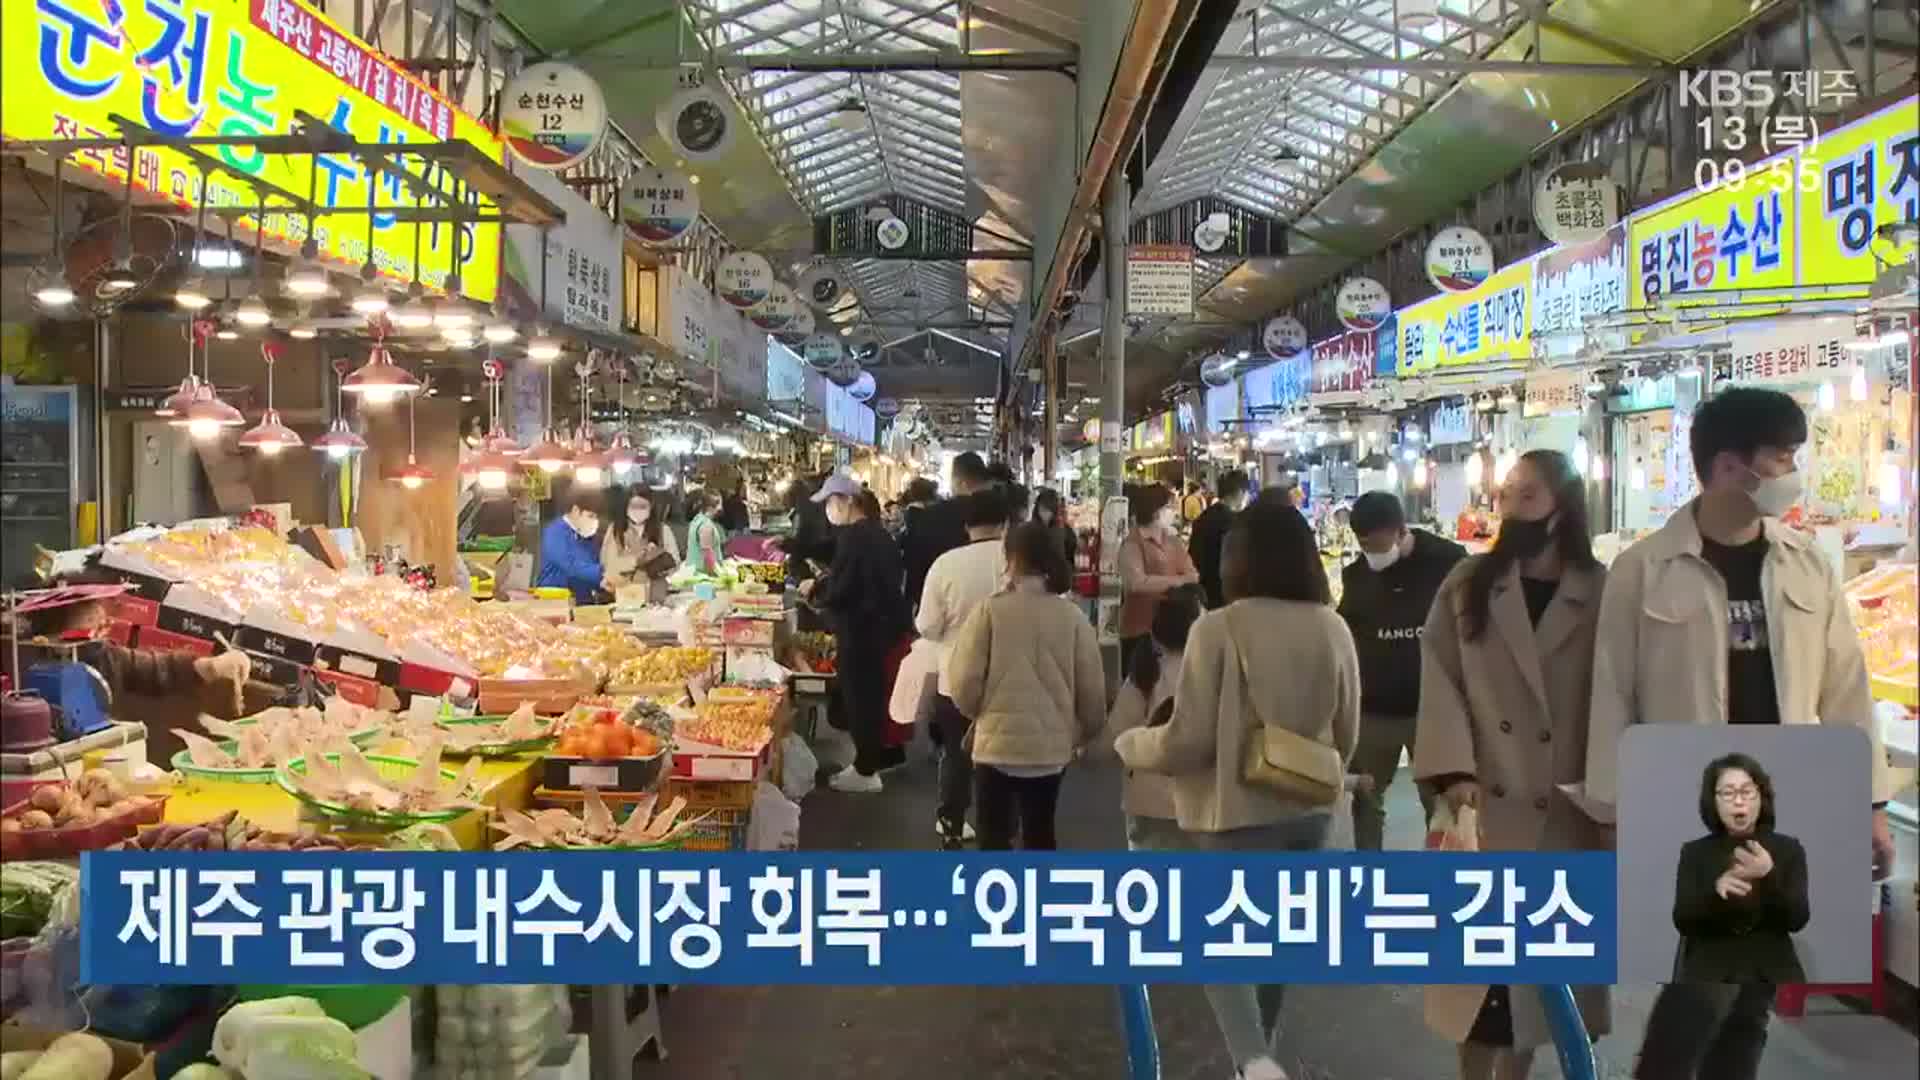 제주 관광 내수시장 회복…‘외국인 소비’는 감소